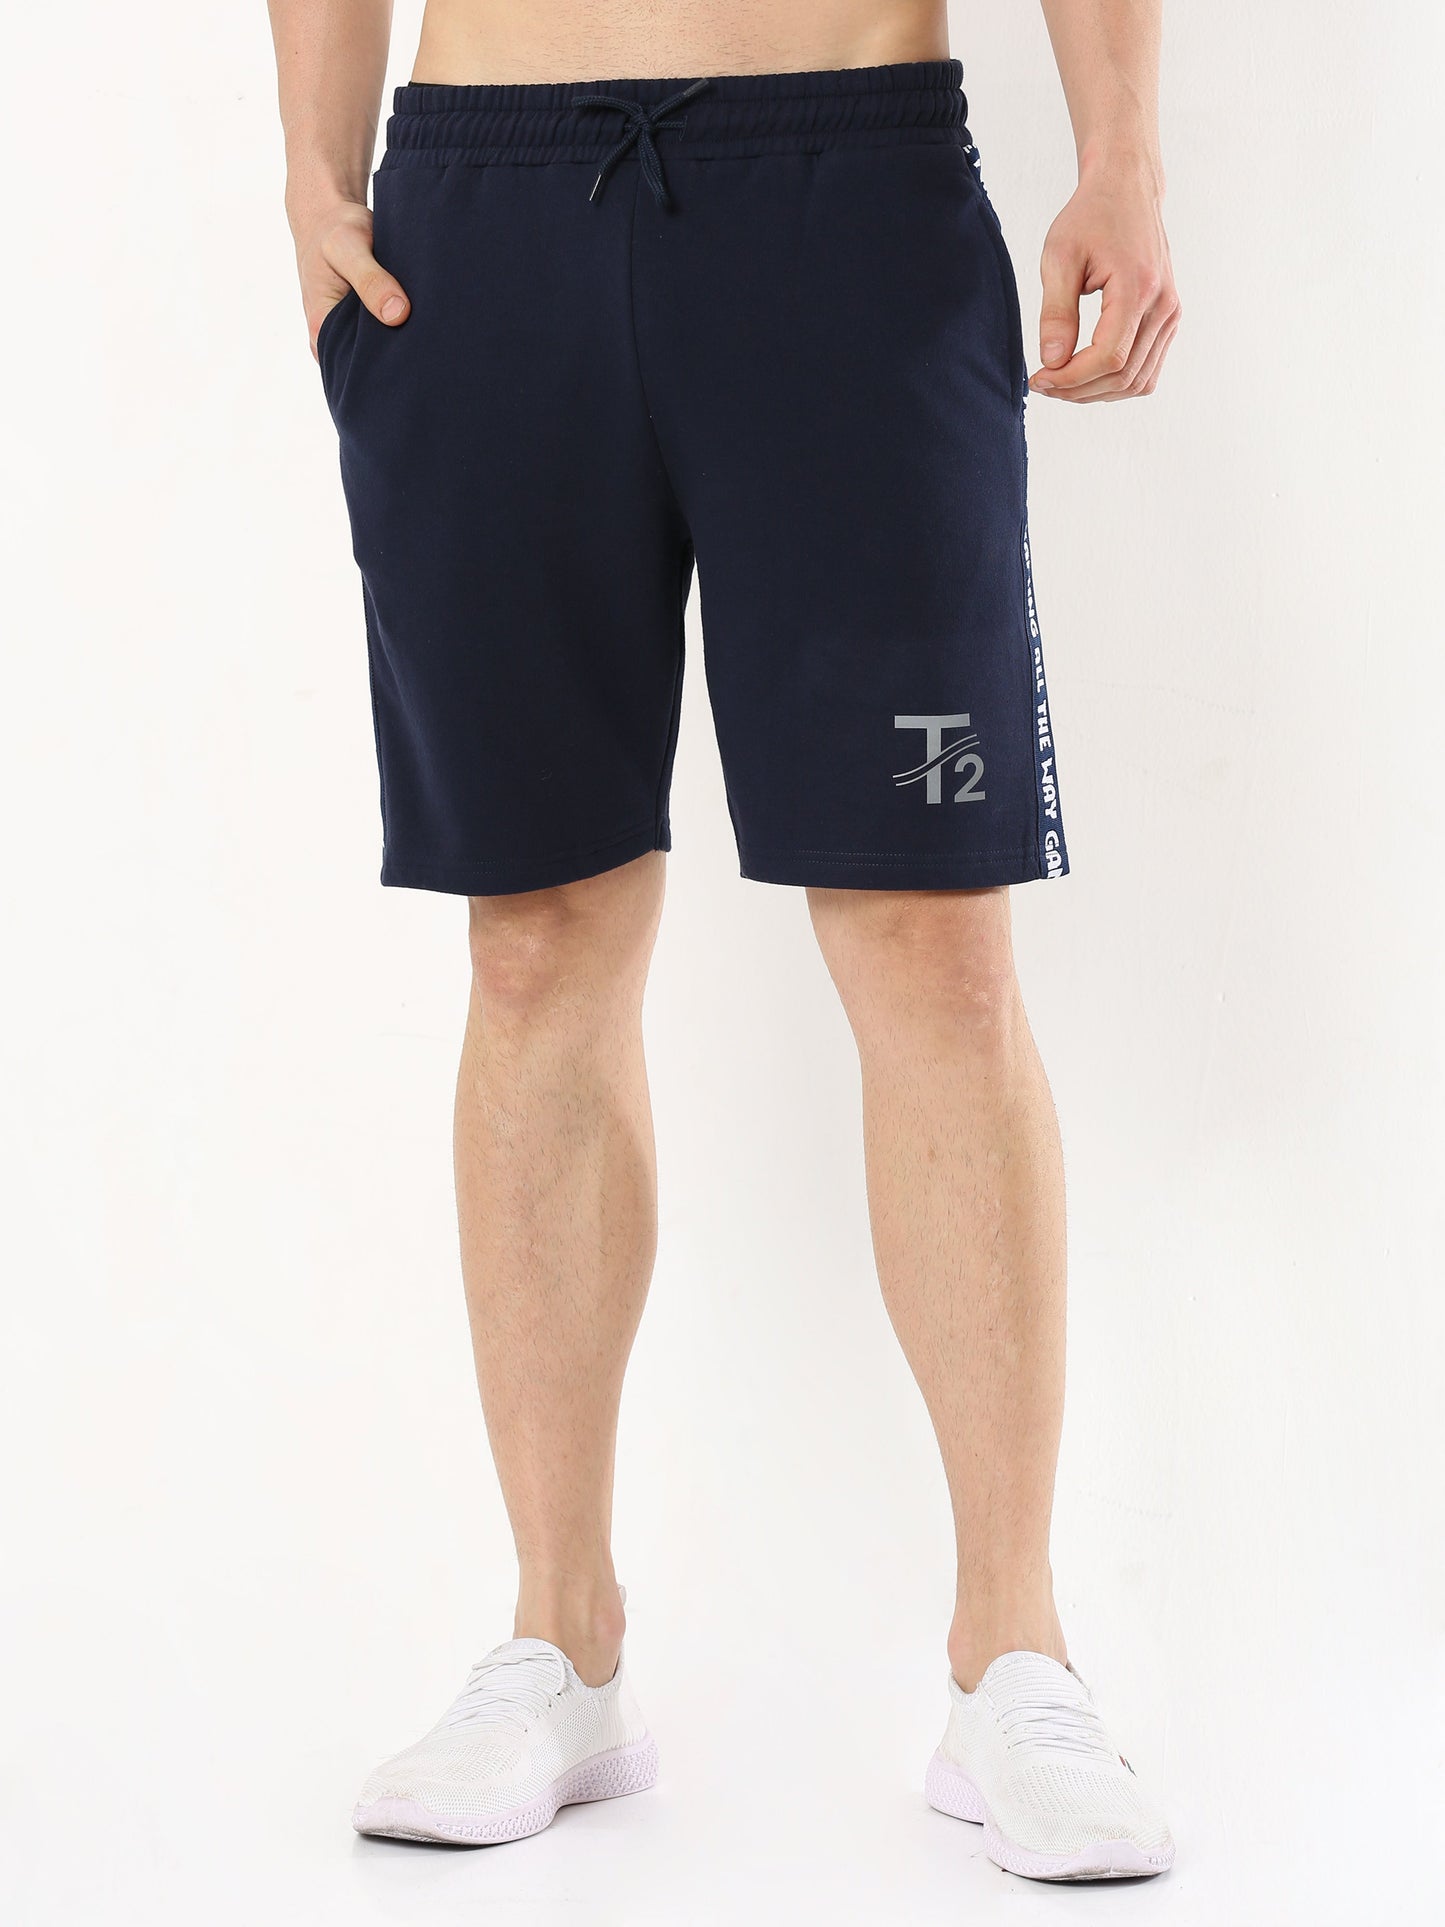 Comfy Cotton - Men's Premium Shorts : Navy